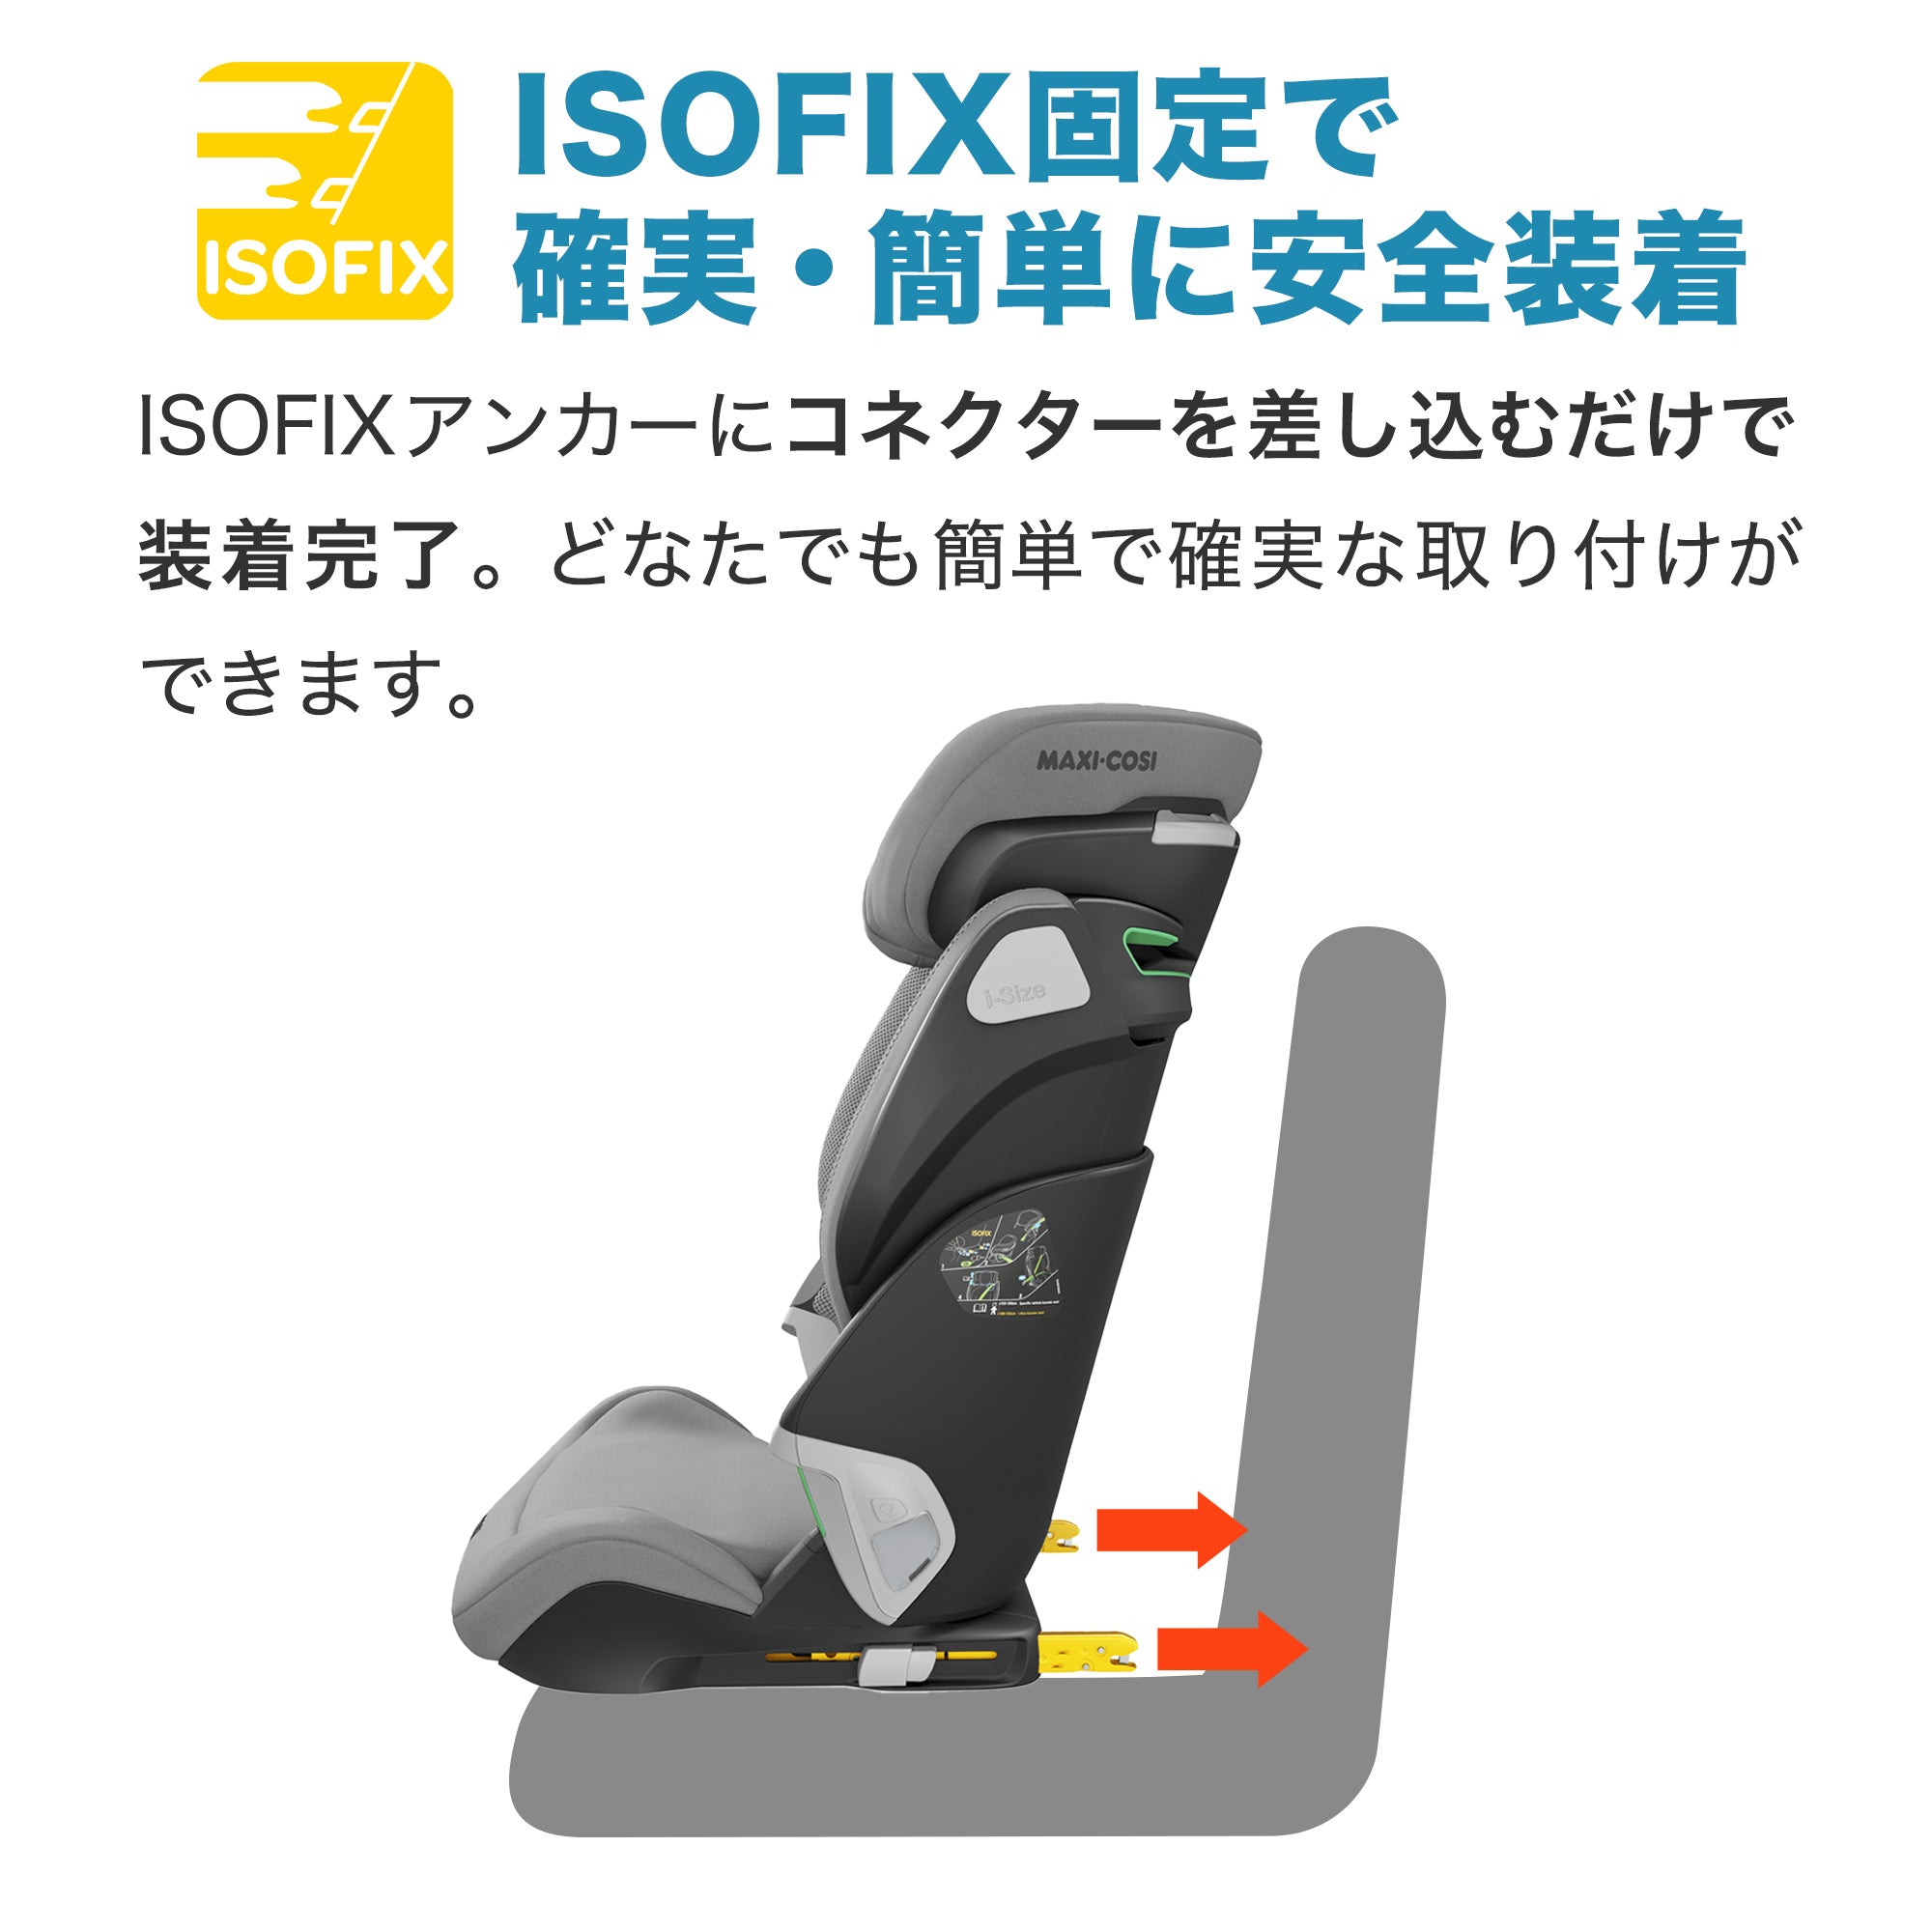 【ISOFIX固定で確実・簡単に安全装着】ISOFIXアンカーにコネクターを差し込むだけで装着完了。どなたでも簡単で確実な取り付けができます。